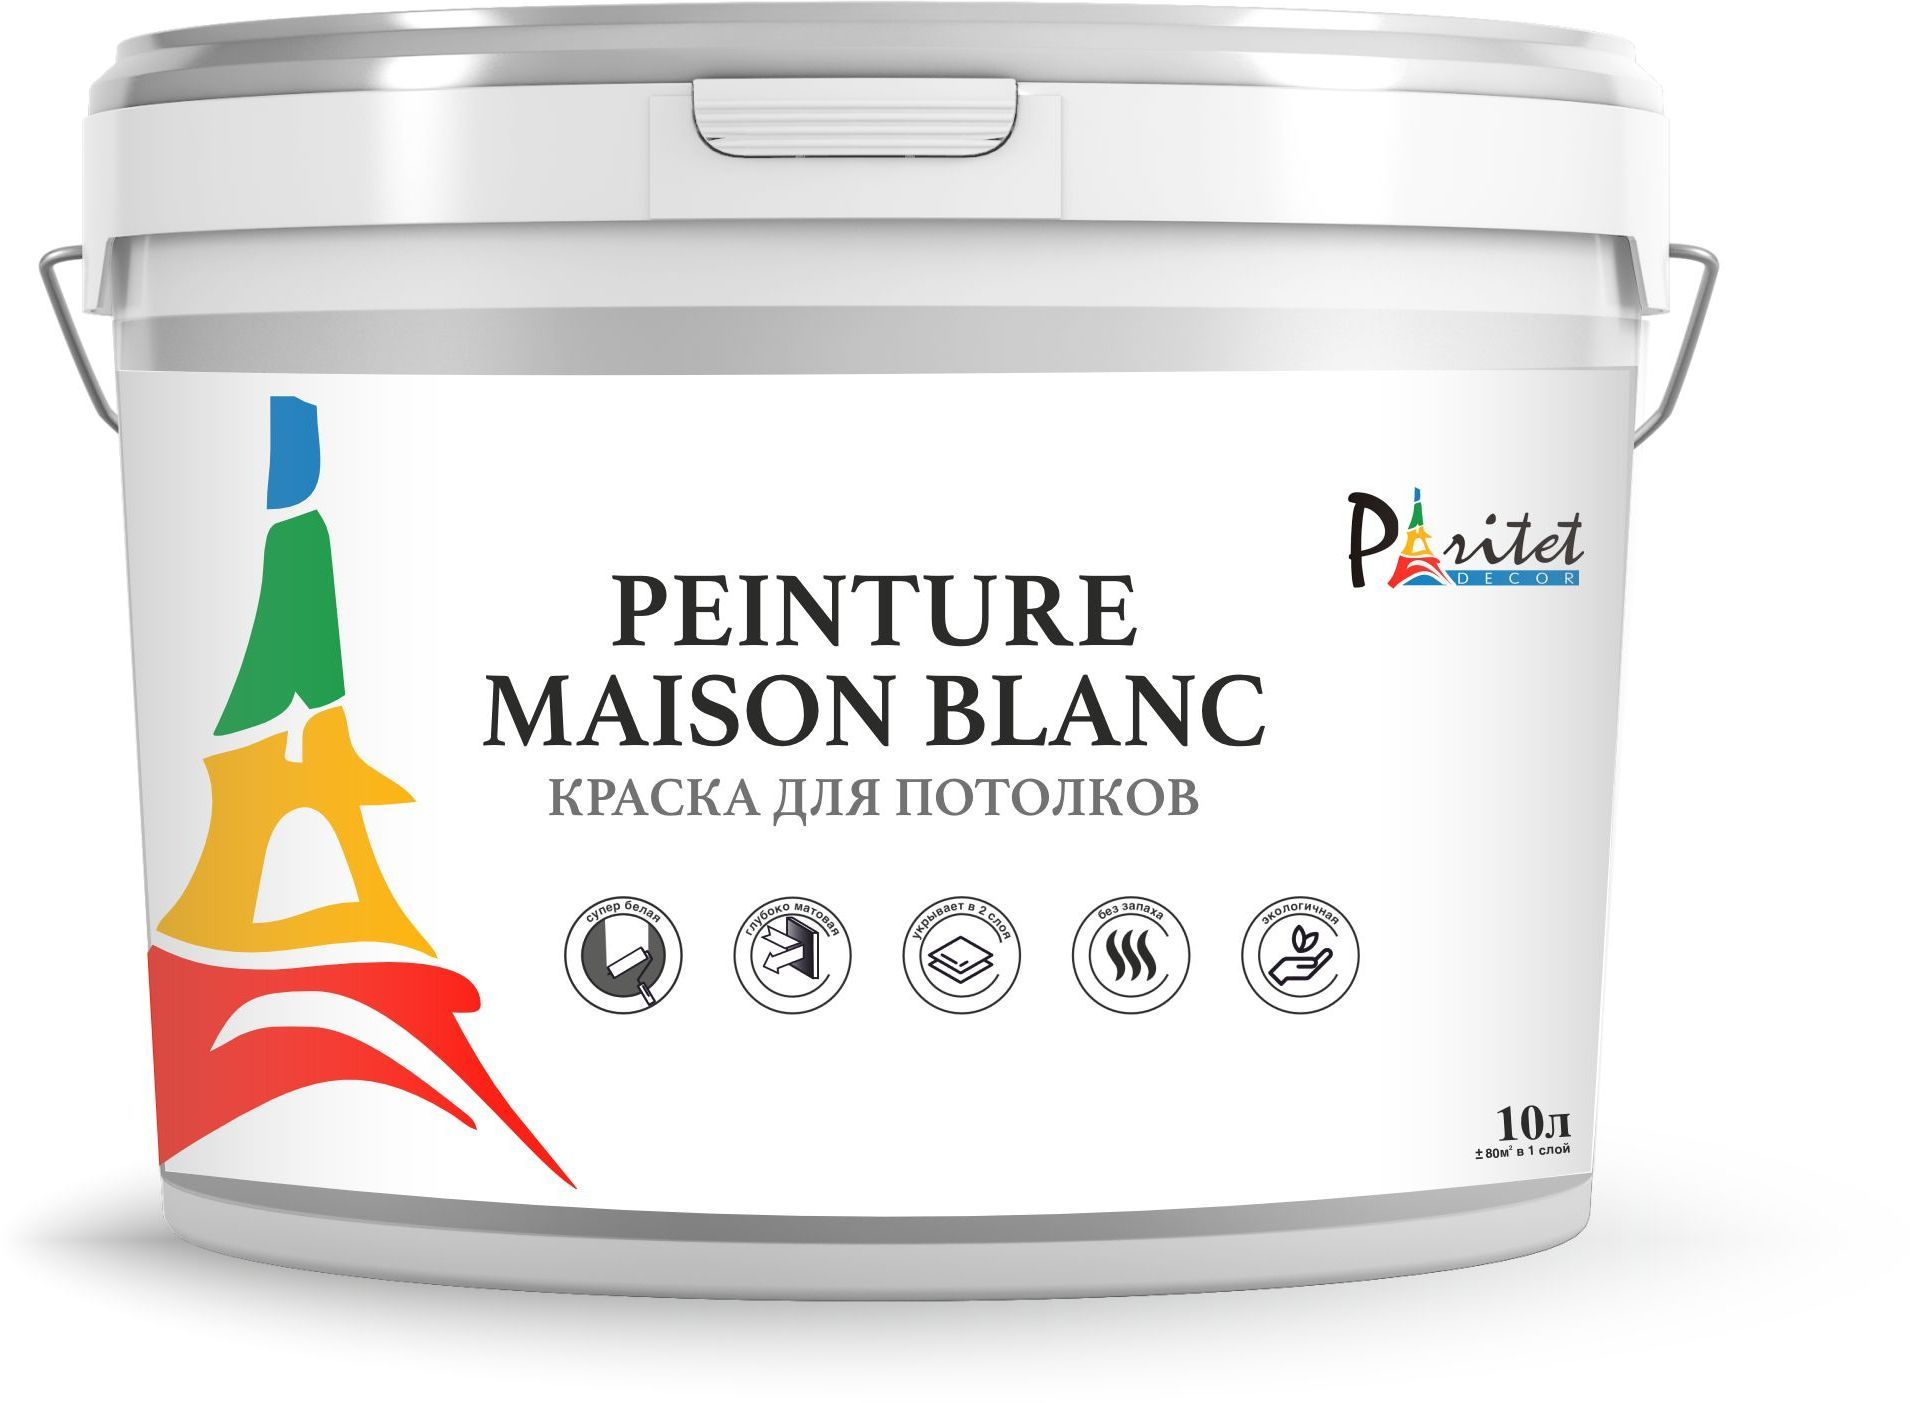 Краска интерьерная для потолков Paritet Peinture Maison Blanc, 10л